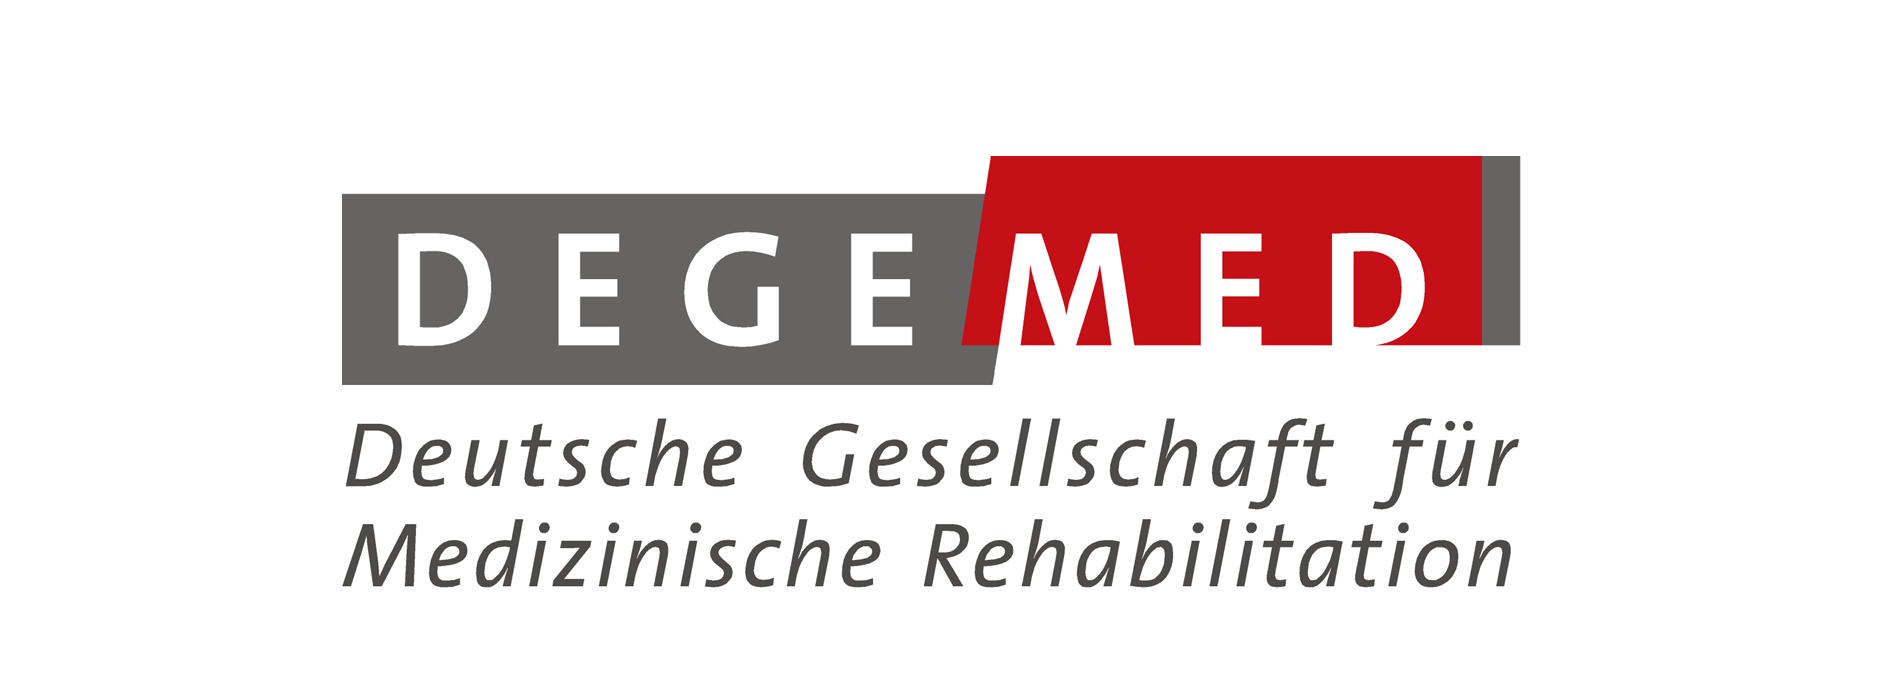 DEGEMED Logo